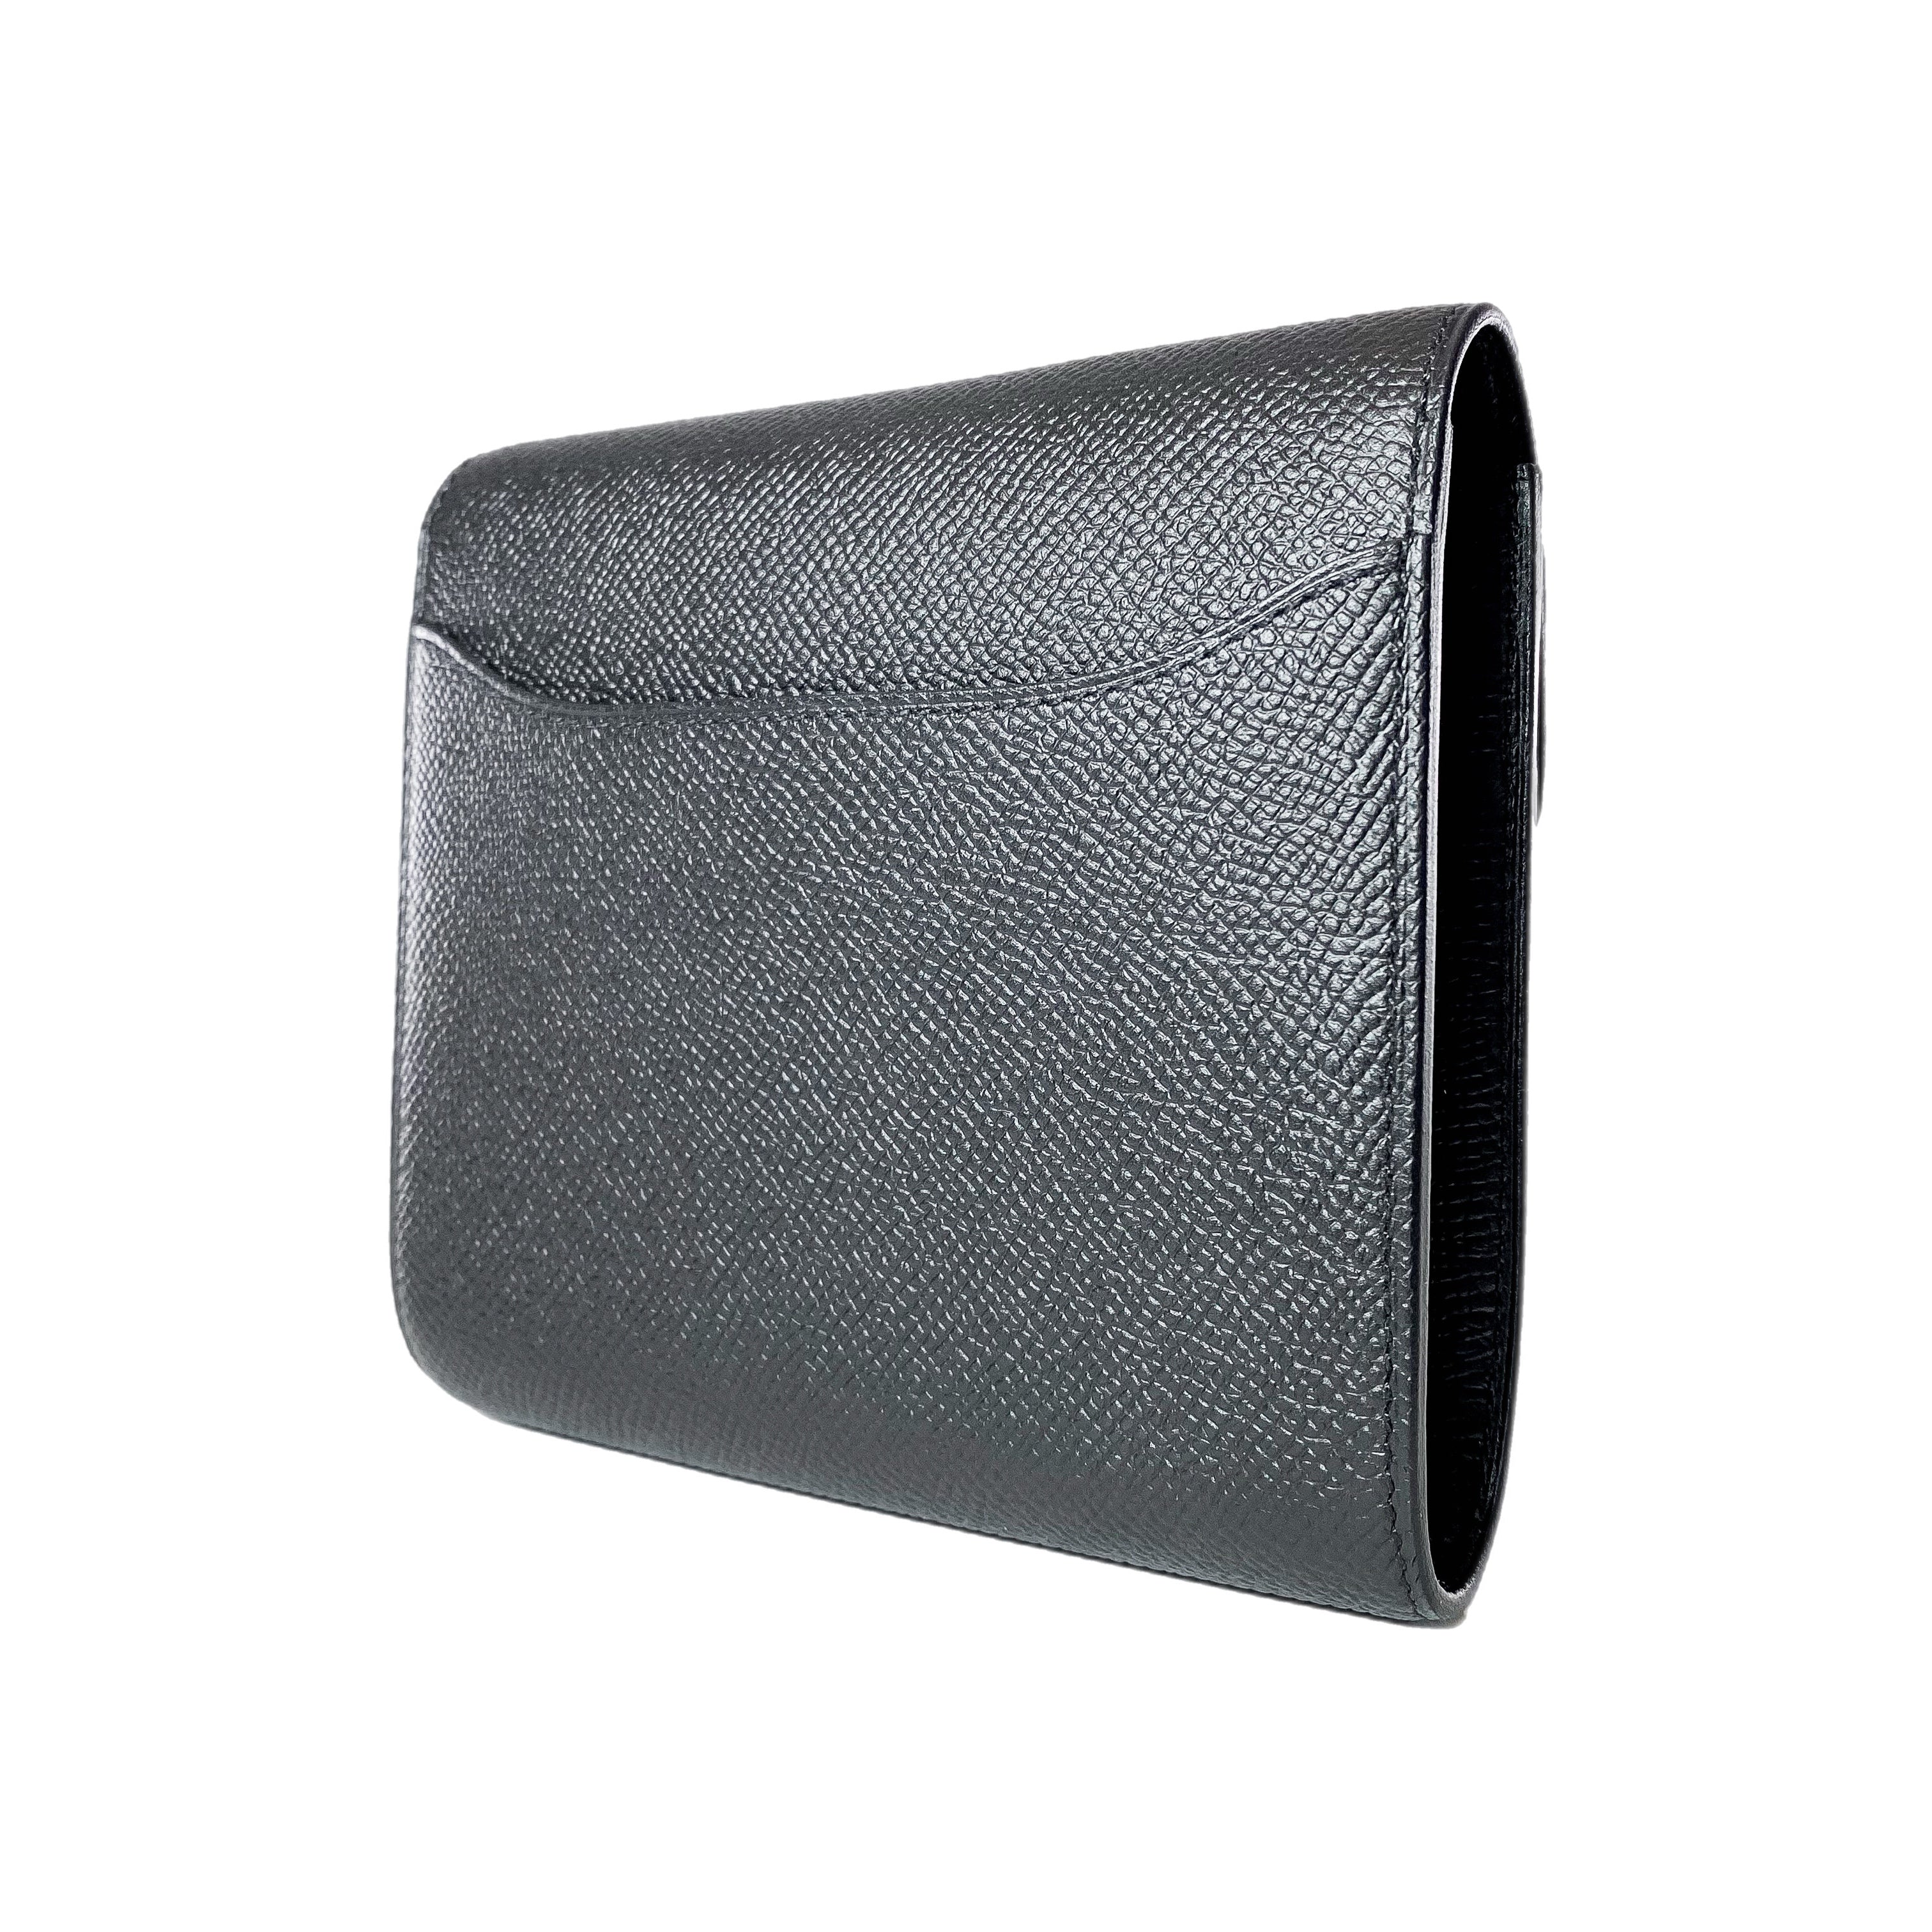 Hermes Constance Compact Wallet Black Epsom Rose Gold Hardware